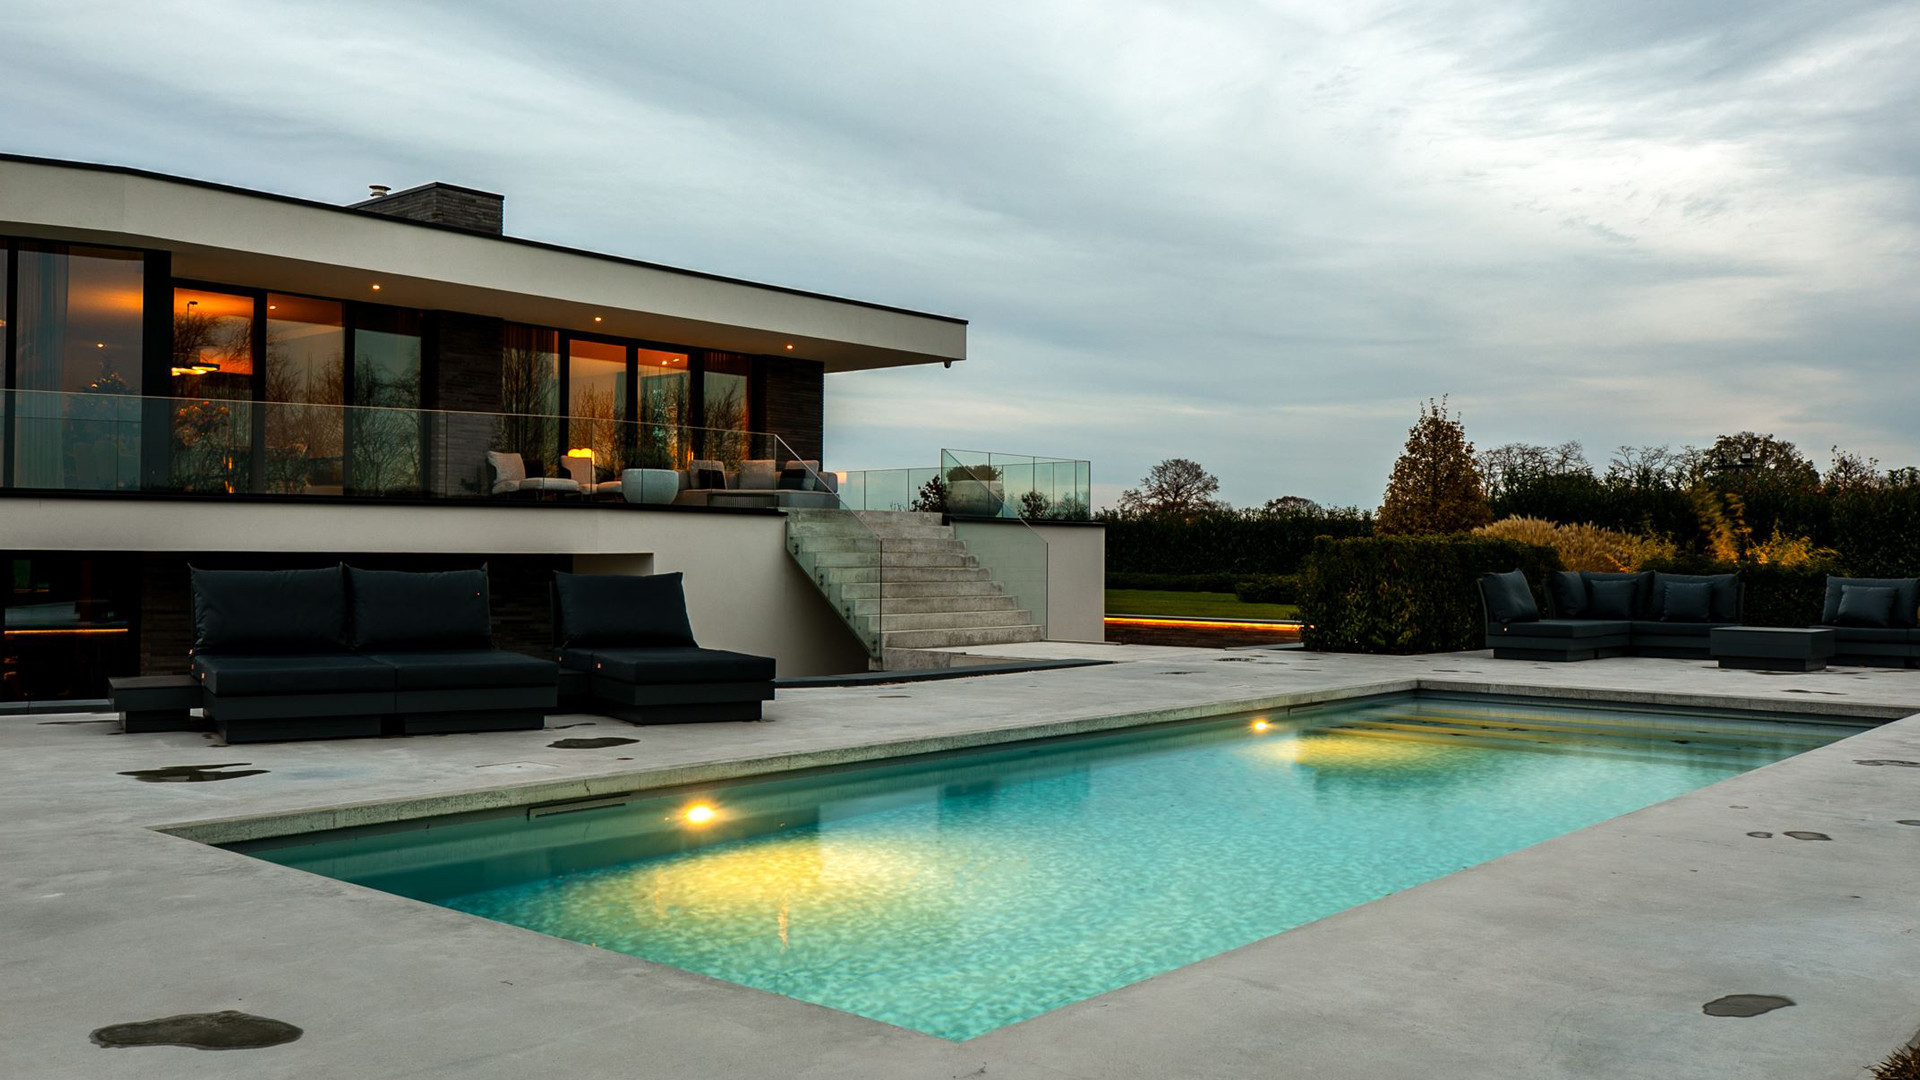 Gio Latooy koopt deze waanzinnig luxe miljoenen villa met verwarmd buitenzwembad. Zie foto's 62